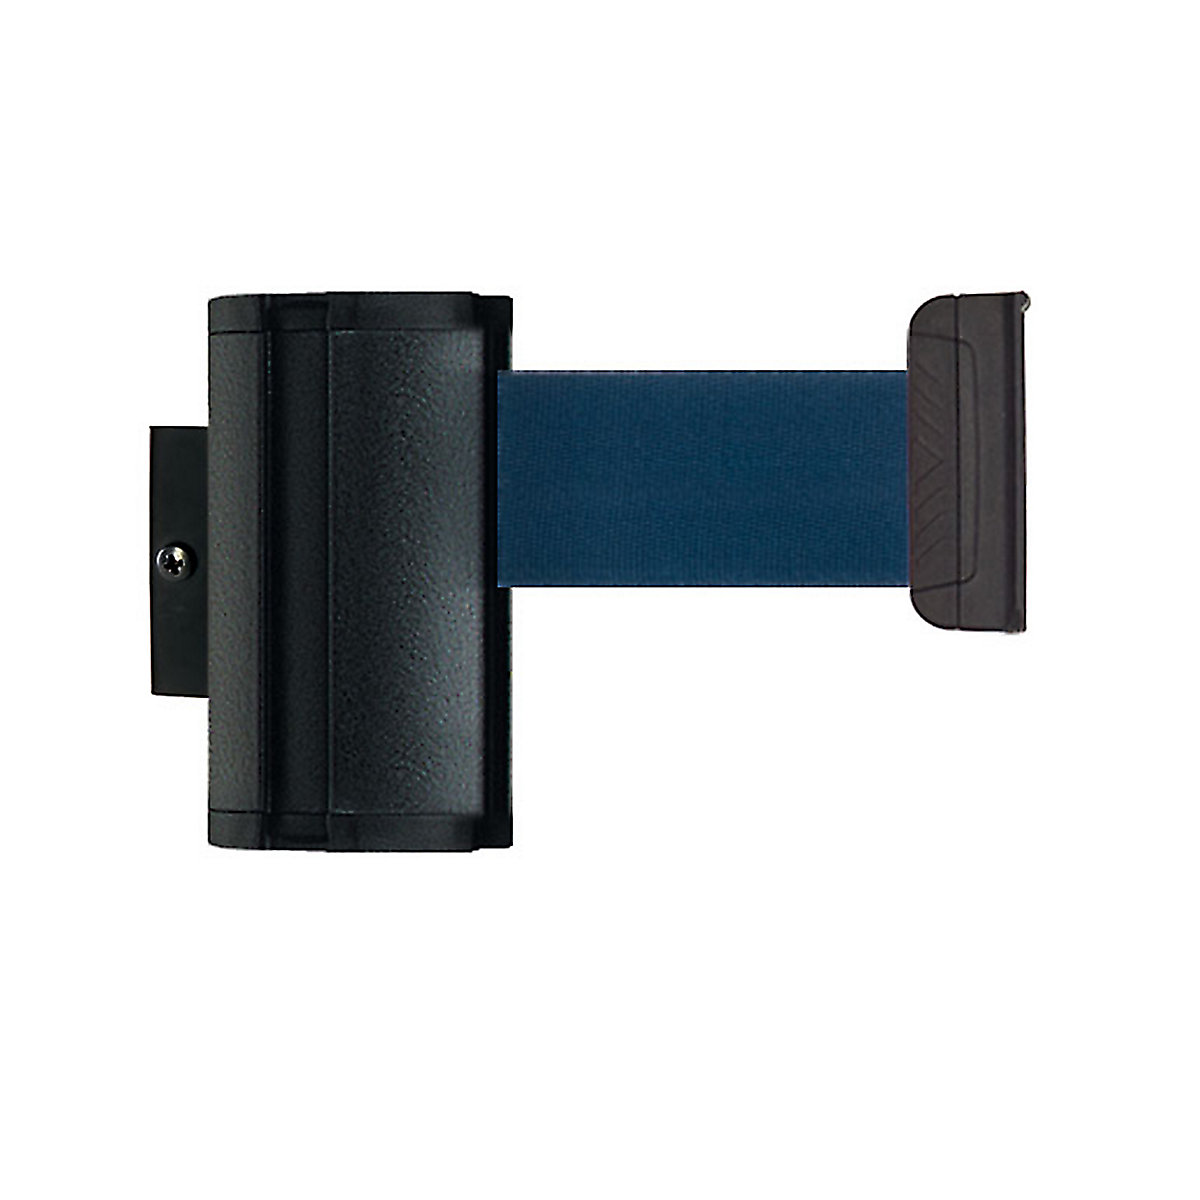 Cassete de cinta Wall Mount, extração máx. da cinta 2300 mm, cor da cinta azul marinho-3